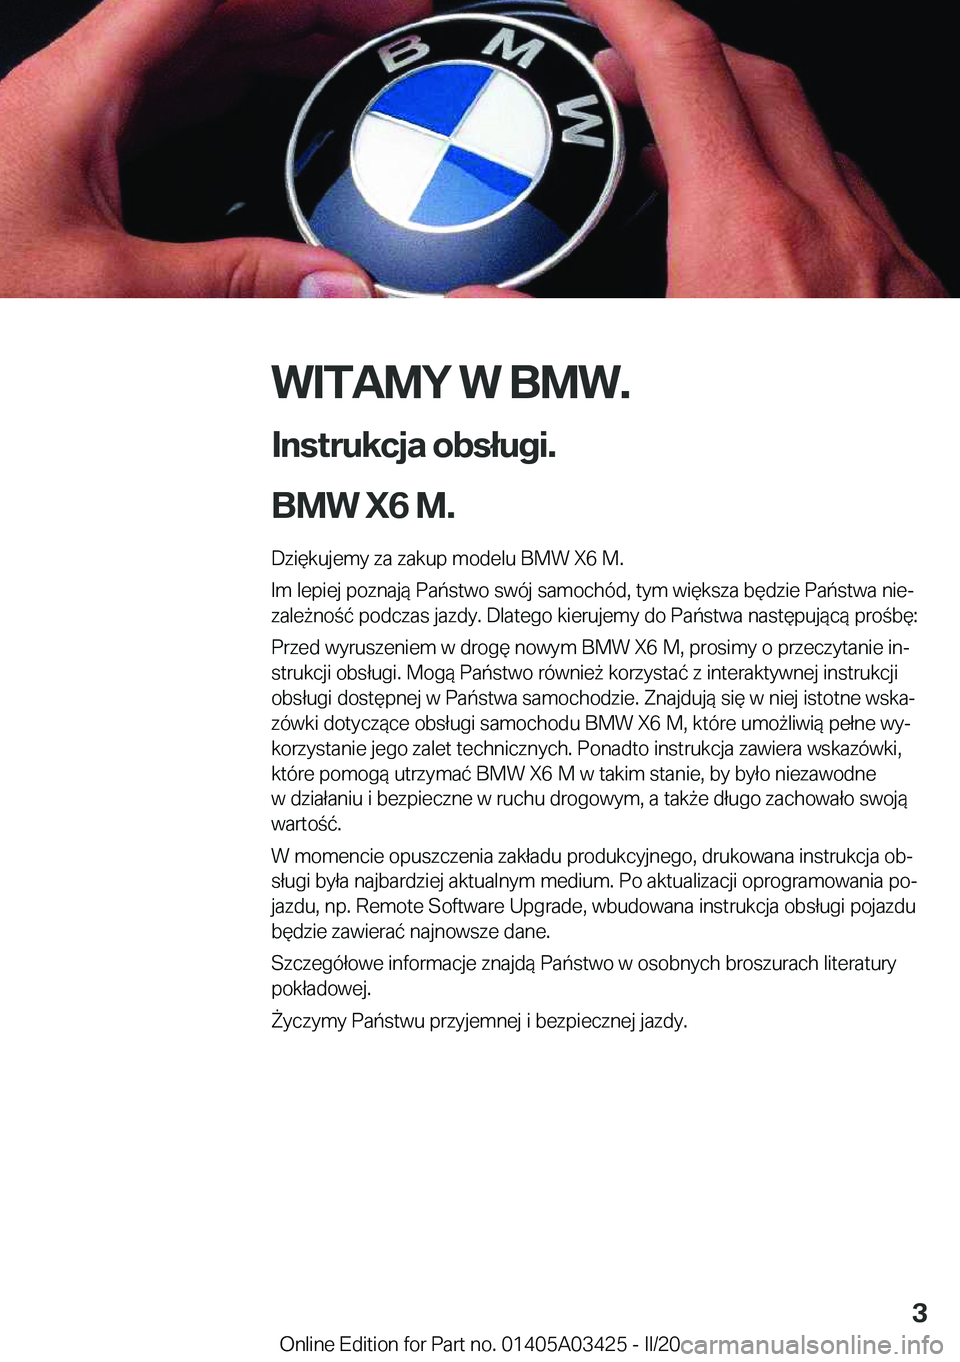 BMW X6 M 2020  Instrukcja obsługi (in Polish) �W�I�T�A�M�Y��W��B�M�W�.
�I�n�s�t�r�u�k�c�j�a��o�b�s�ł�u�g�i�.
�B�M�W��X�6��M�. �D�z�i�